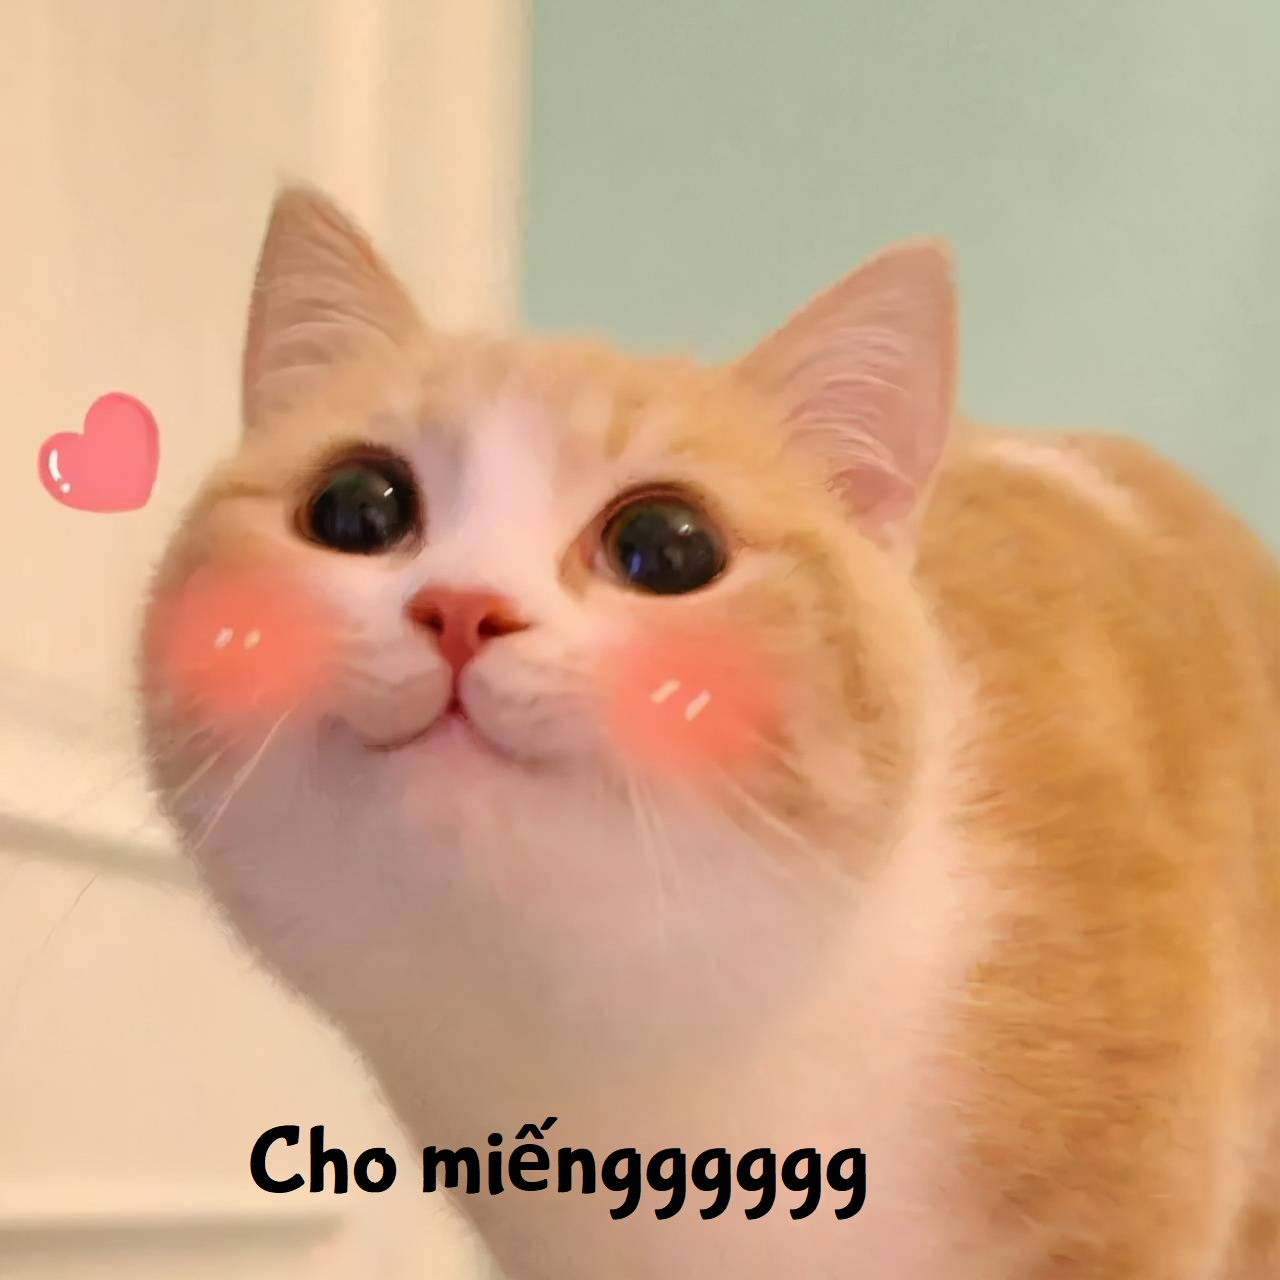 99 Hình ảnh Meme Mèo Hài Hước Cute, Mèo Bựa Lầy